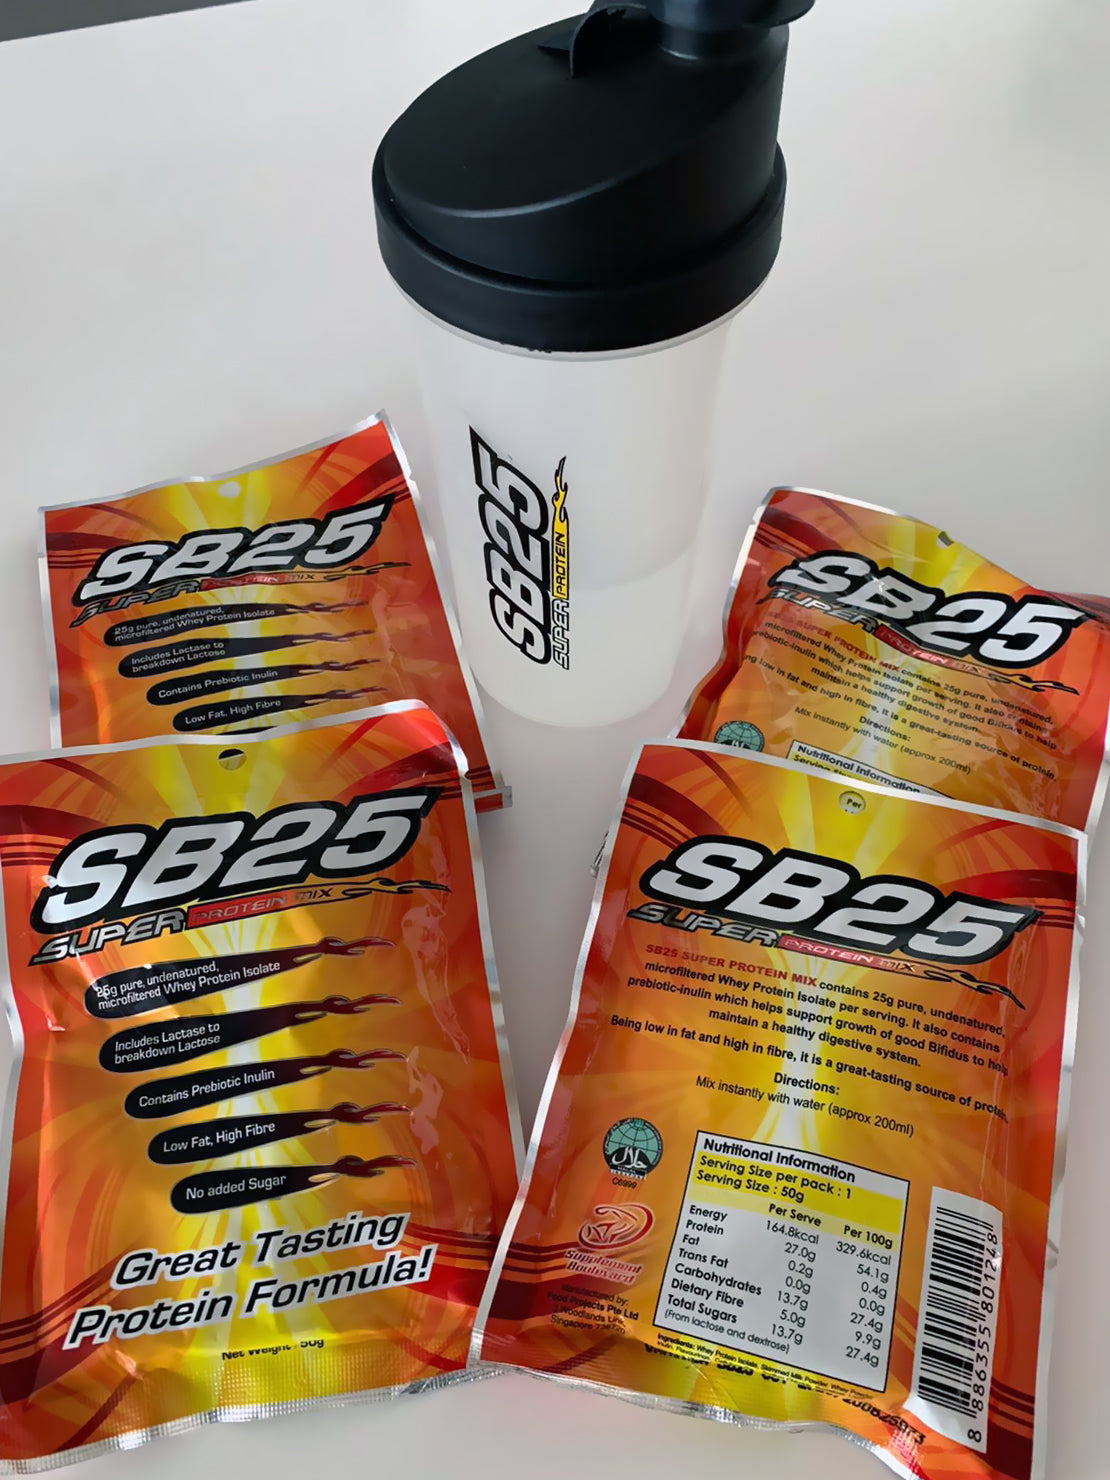 FITFAB SB25 Protein Shake - Vanilla